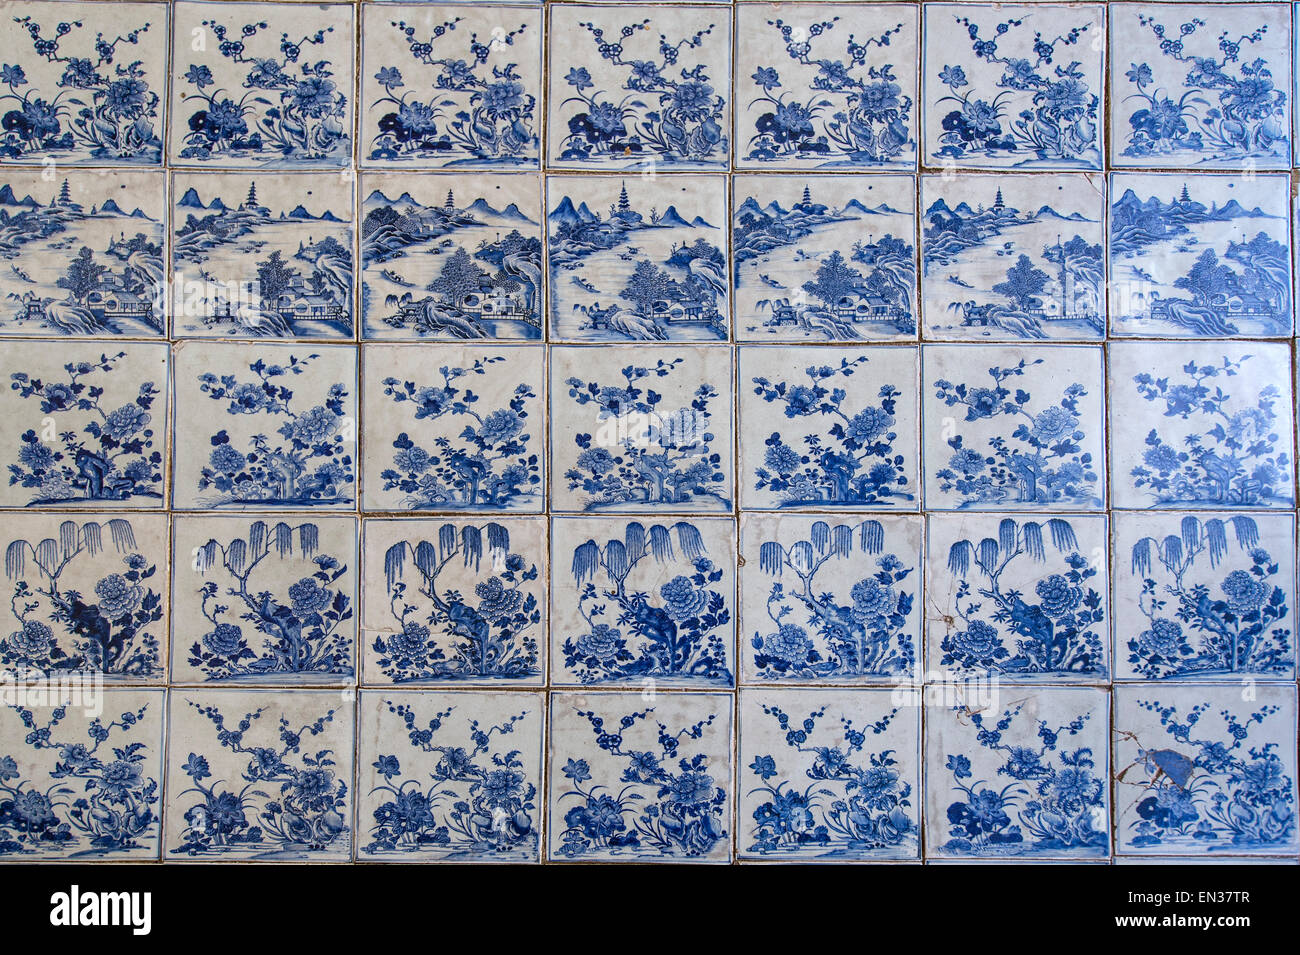 Suelo Hecho de pintado a mano de azulejos de porcelana china en la sinagoga Paradesi, Barrio Judío o judío, la ciudad de Kochi y Mattancherry Foto de stock